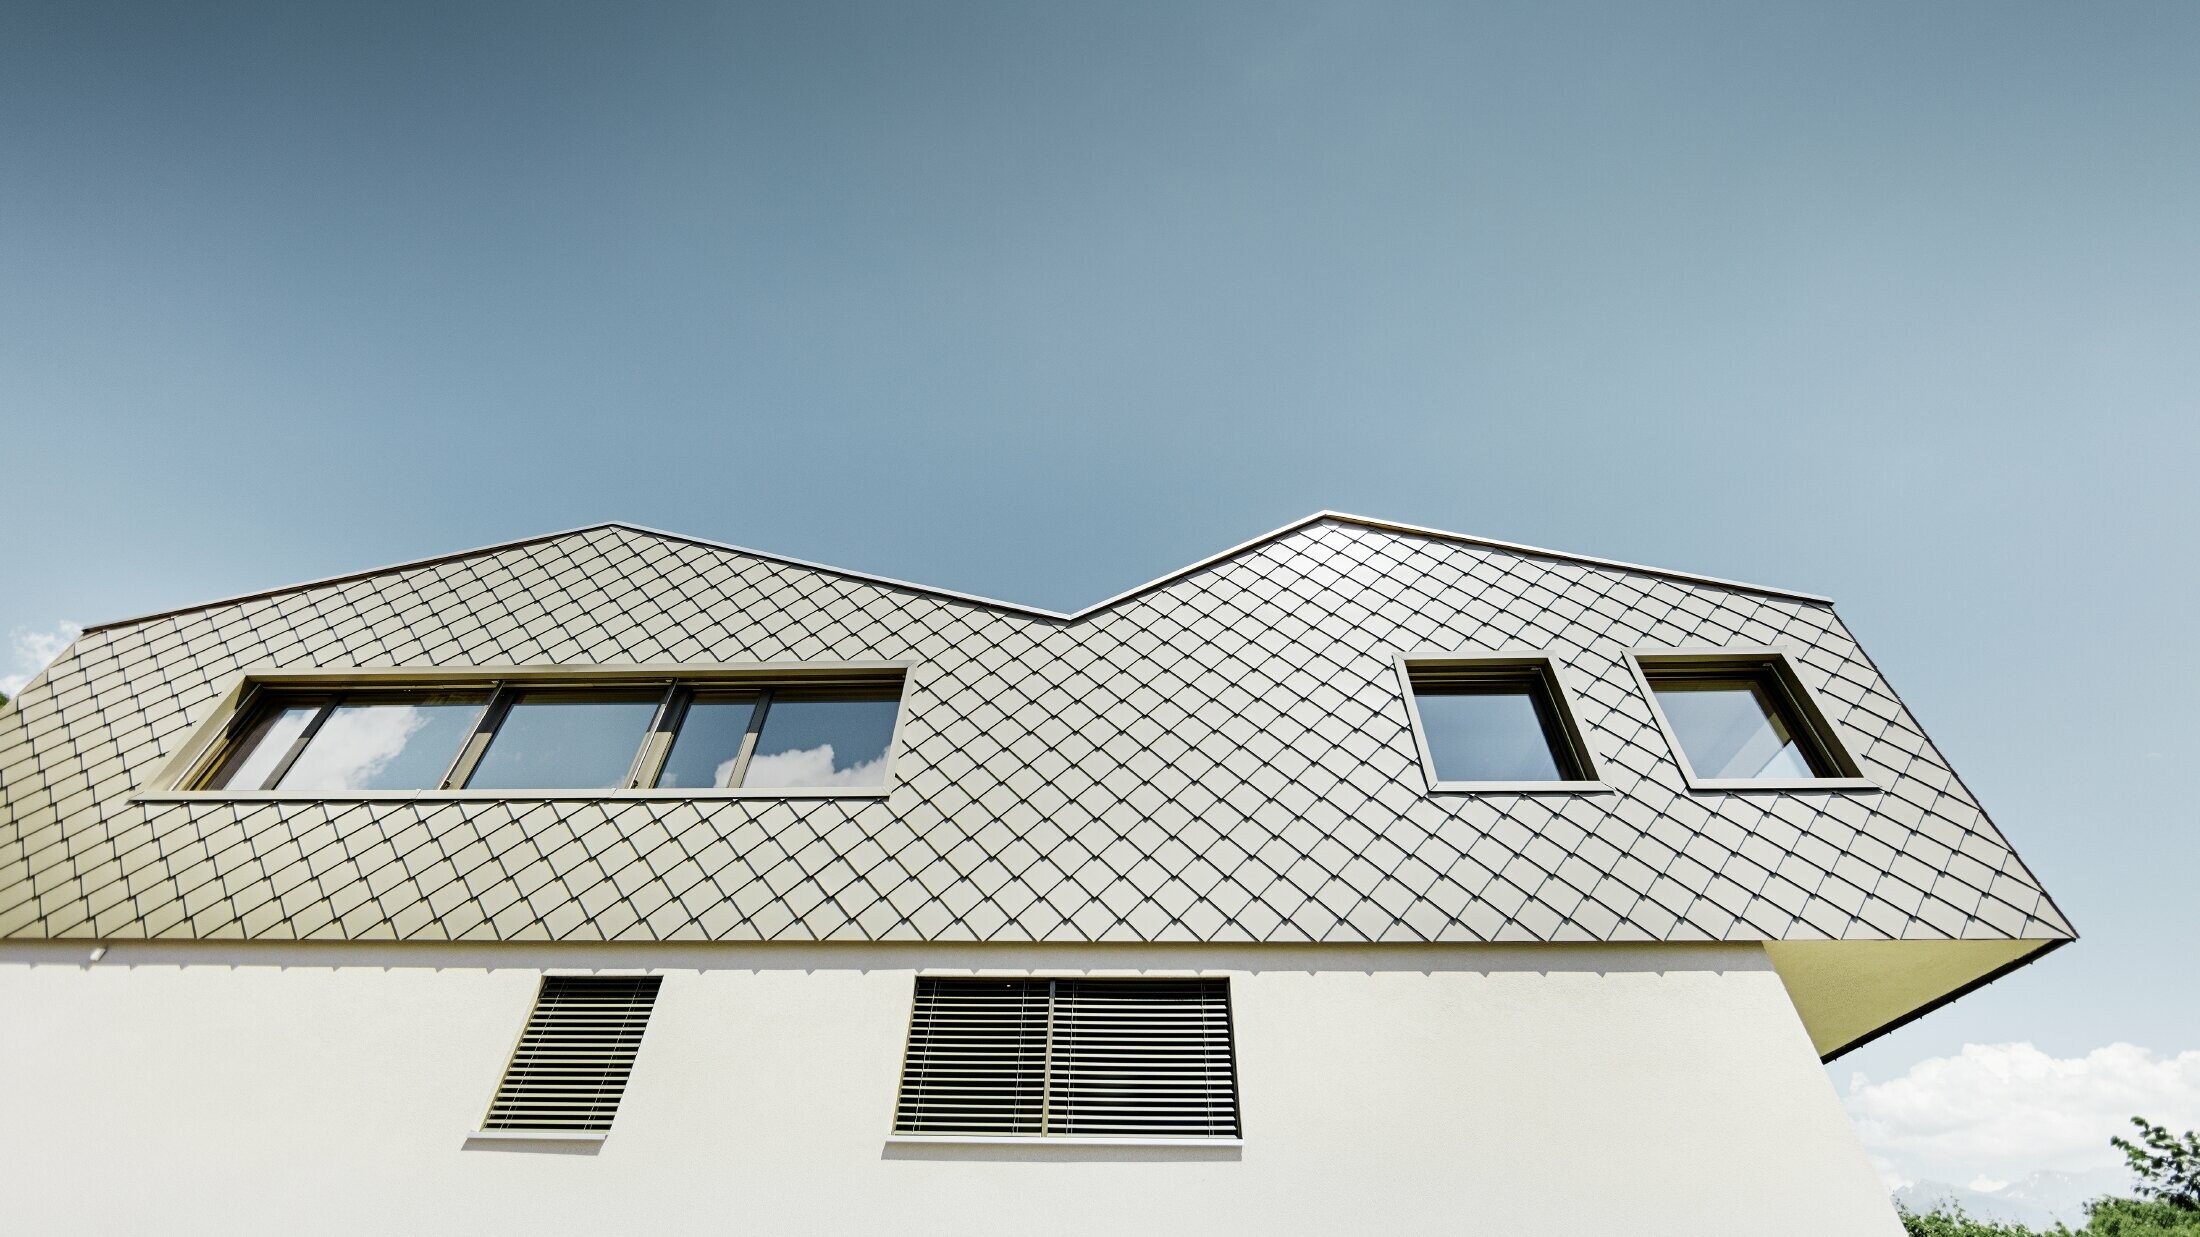 Modernes Einfamilienhaus mitten in den Weinbergen des Rhônetals mit 4 unterschiedlichen Dachflächen und offener Galerie mit einer Rautenfassade in bronze